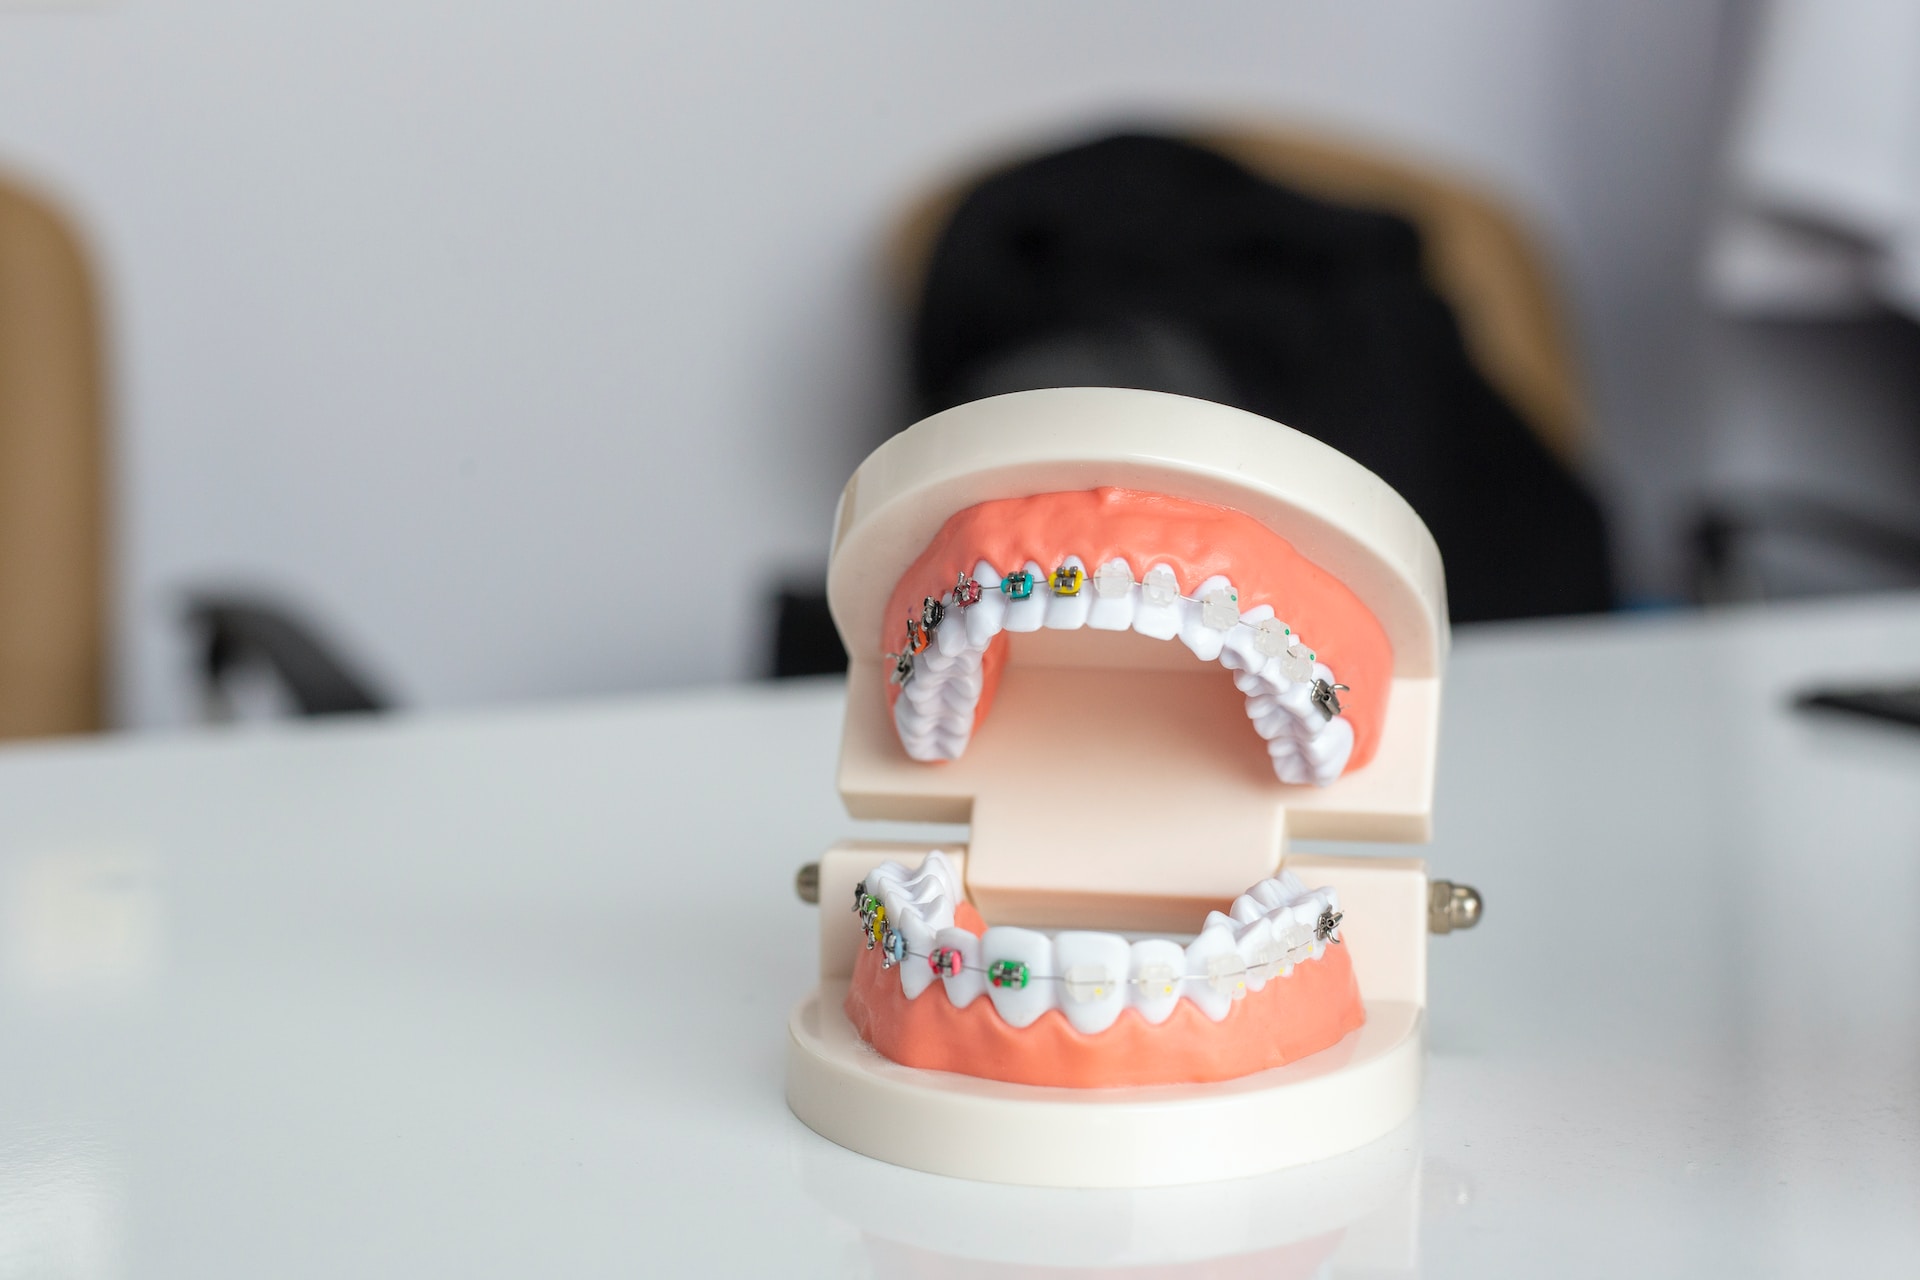 Przygotowanie do Wizyty u Ortodonty: Wszystko, co Powinieneś Wiedzieć